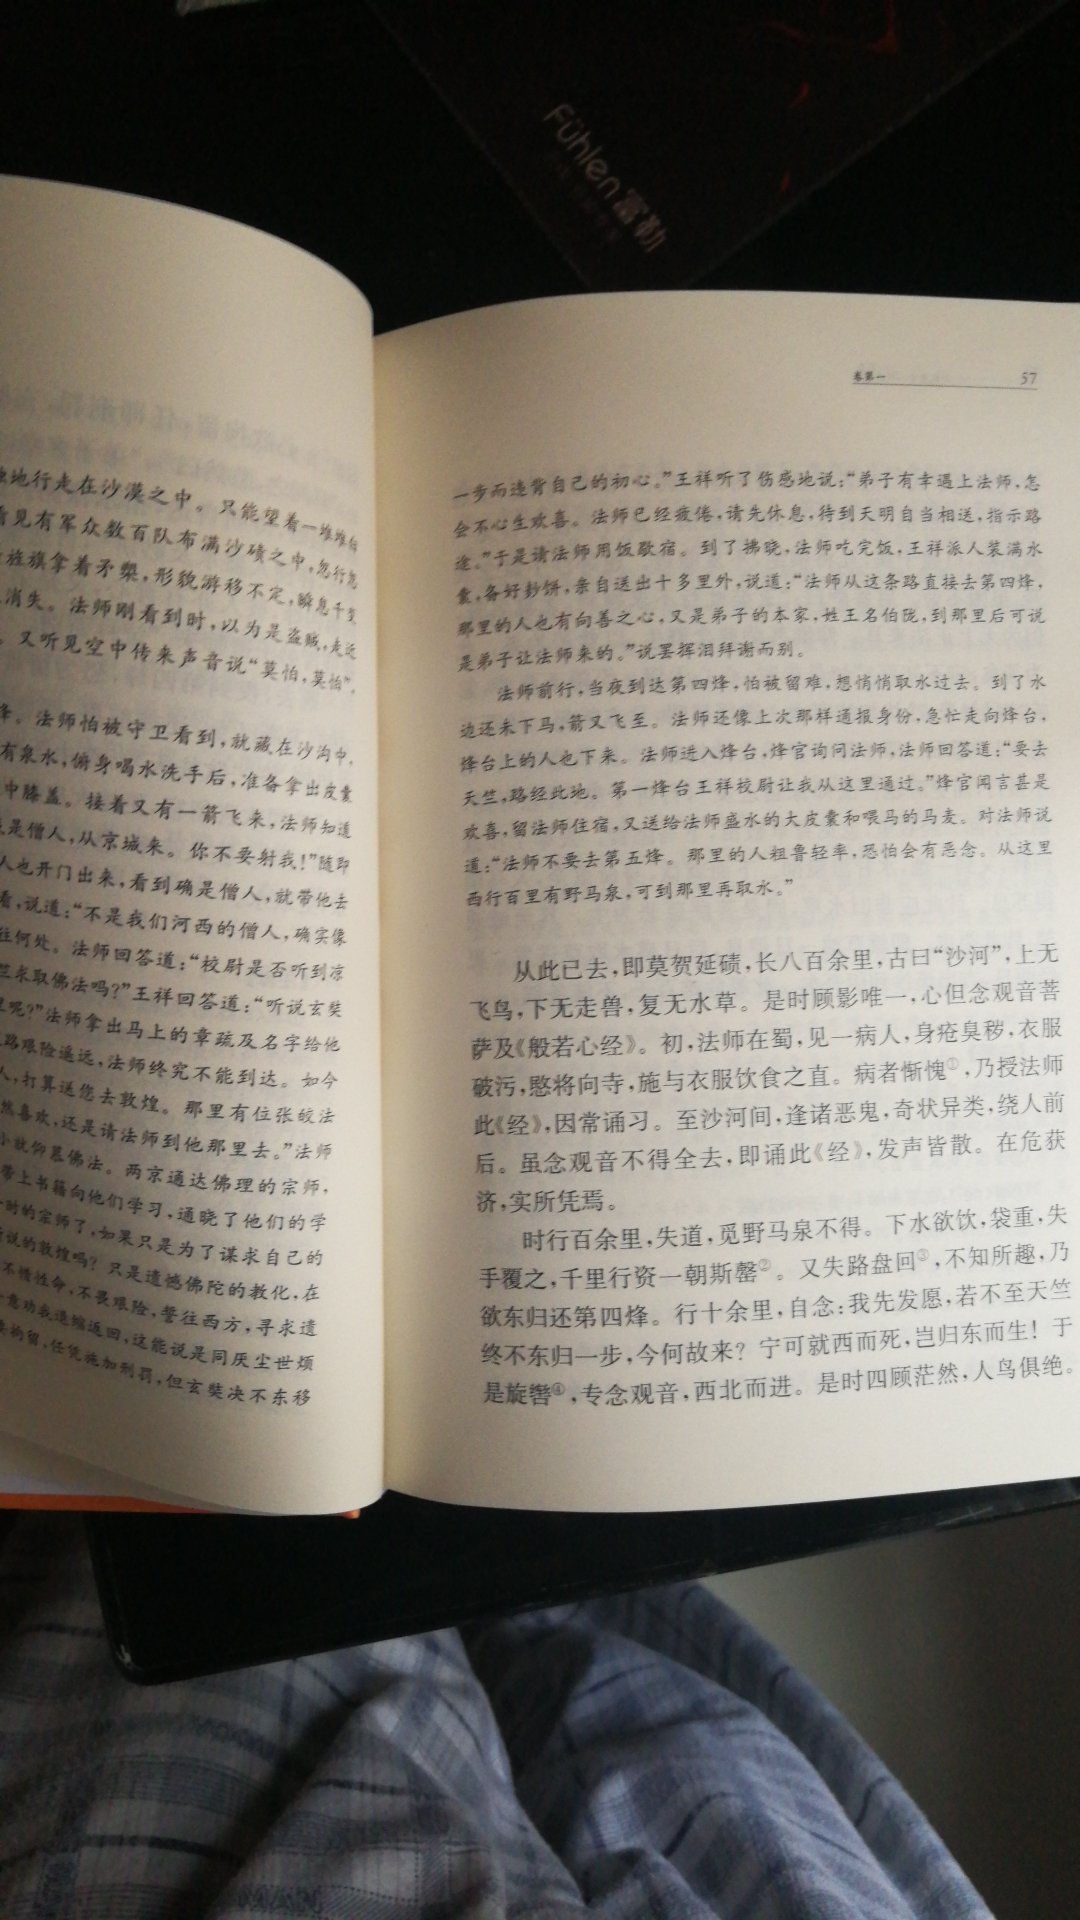 中华书局三全本新版经典，见机而入，何时能读完啊，已读《论语》，《诗经》，《坛经》，《阅微草堂笔记》上，《孟子》在读中。。。